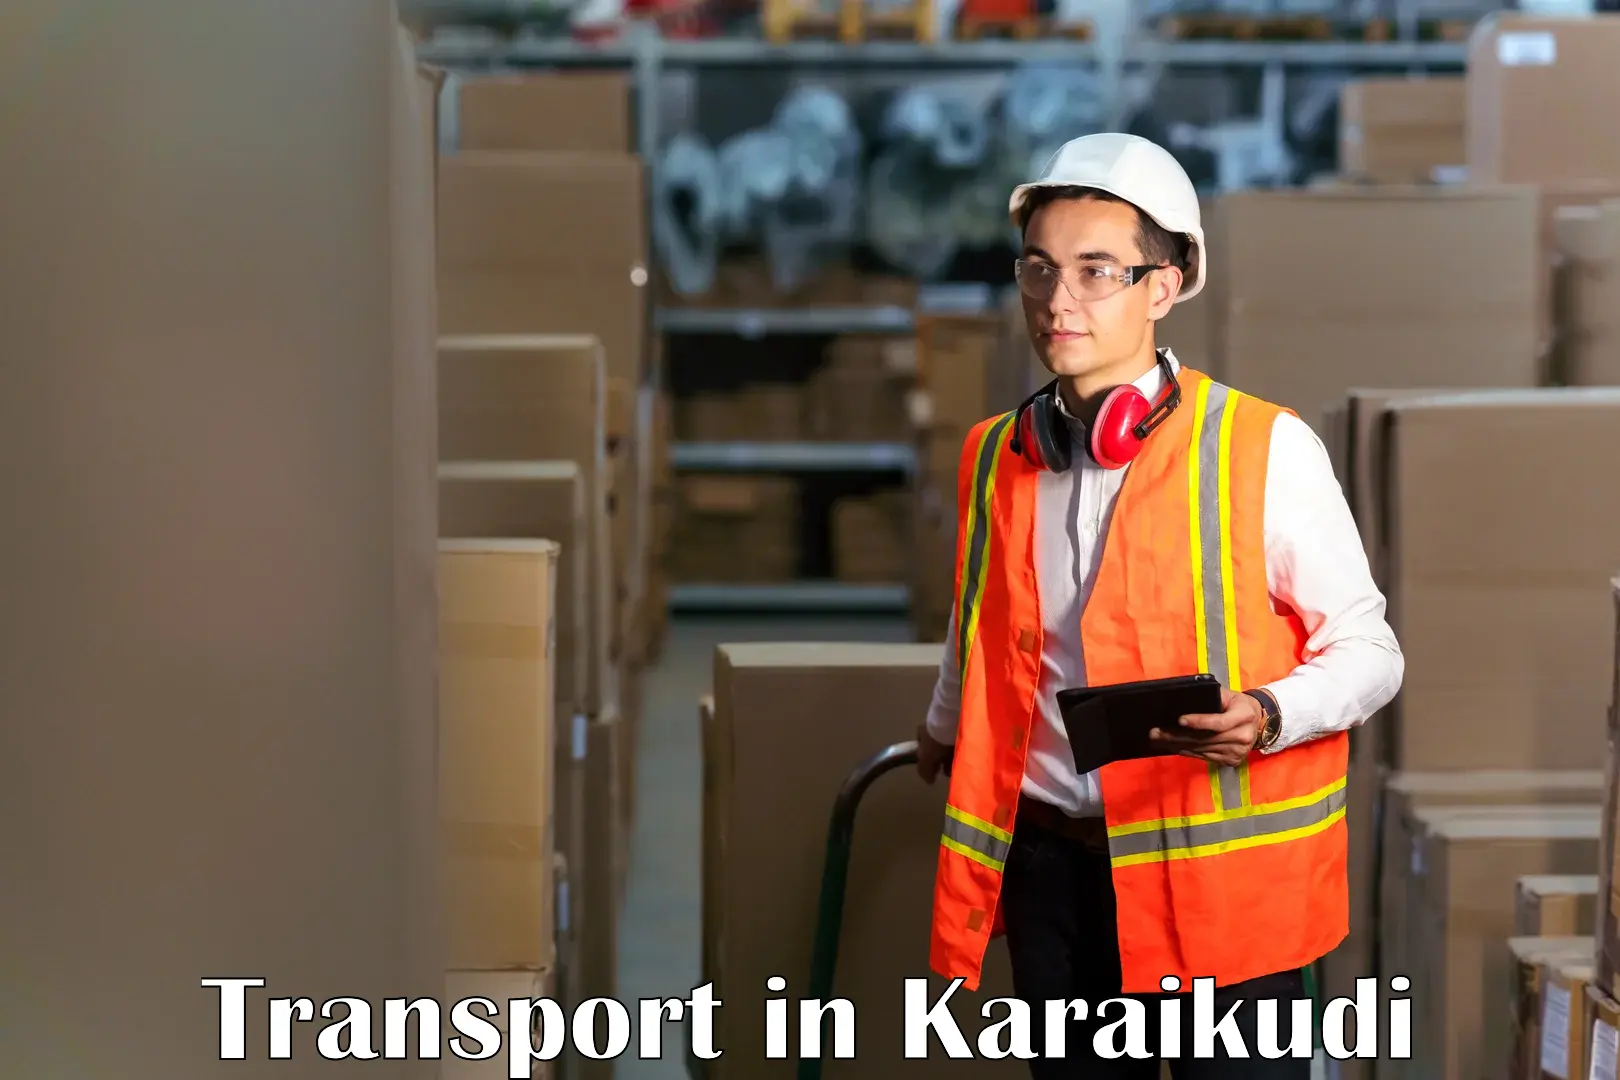 Goods transport services in Karaikudi